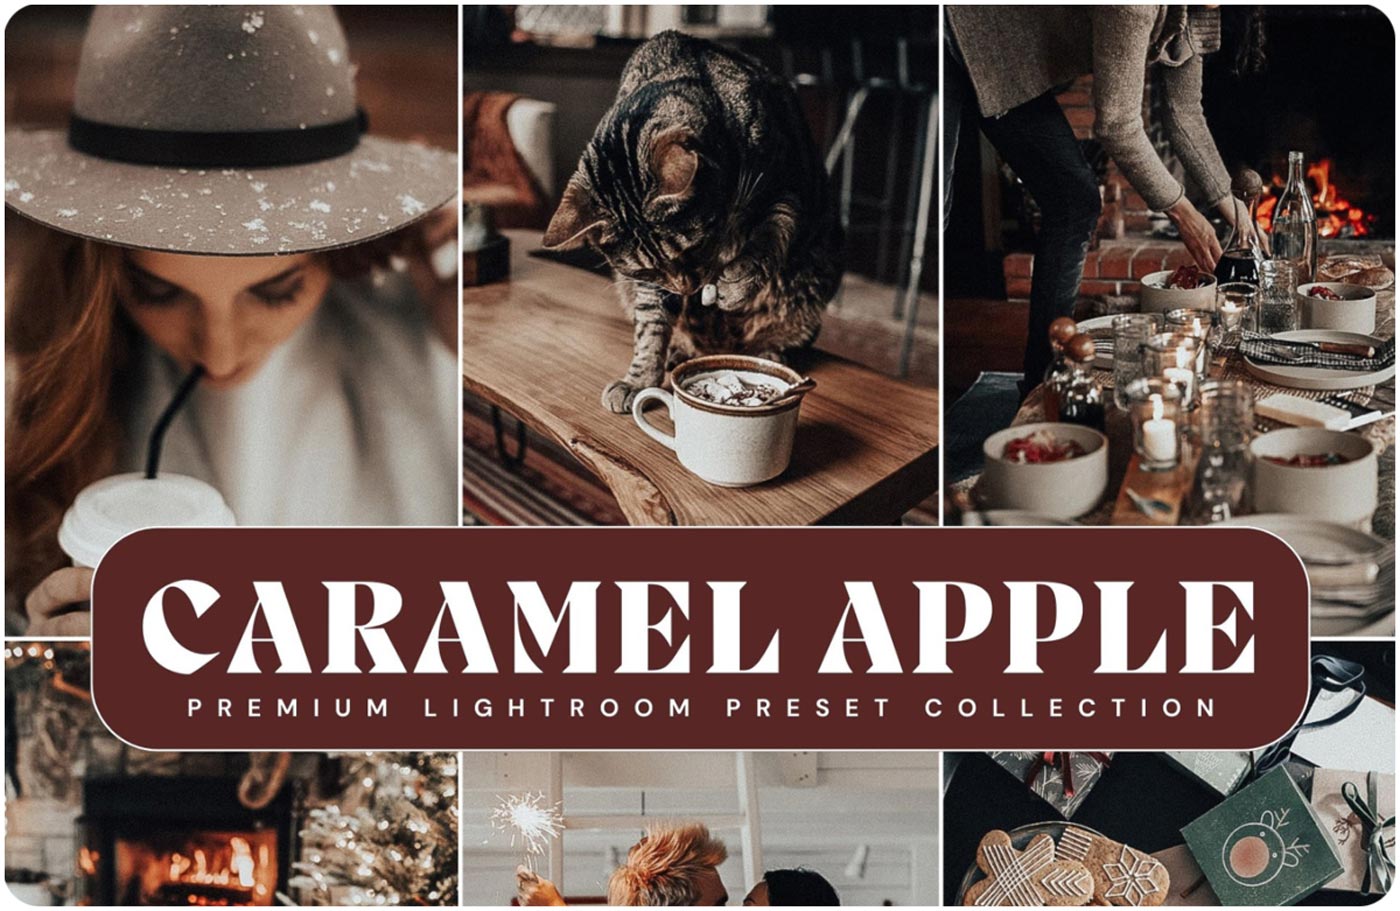 Caramel Apple Presets Best Christmas Lightroom Presets